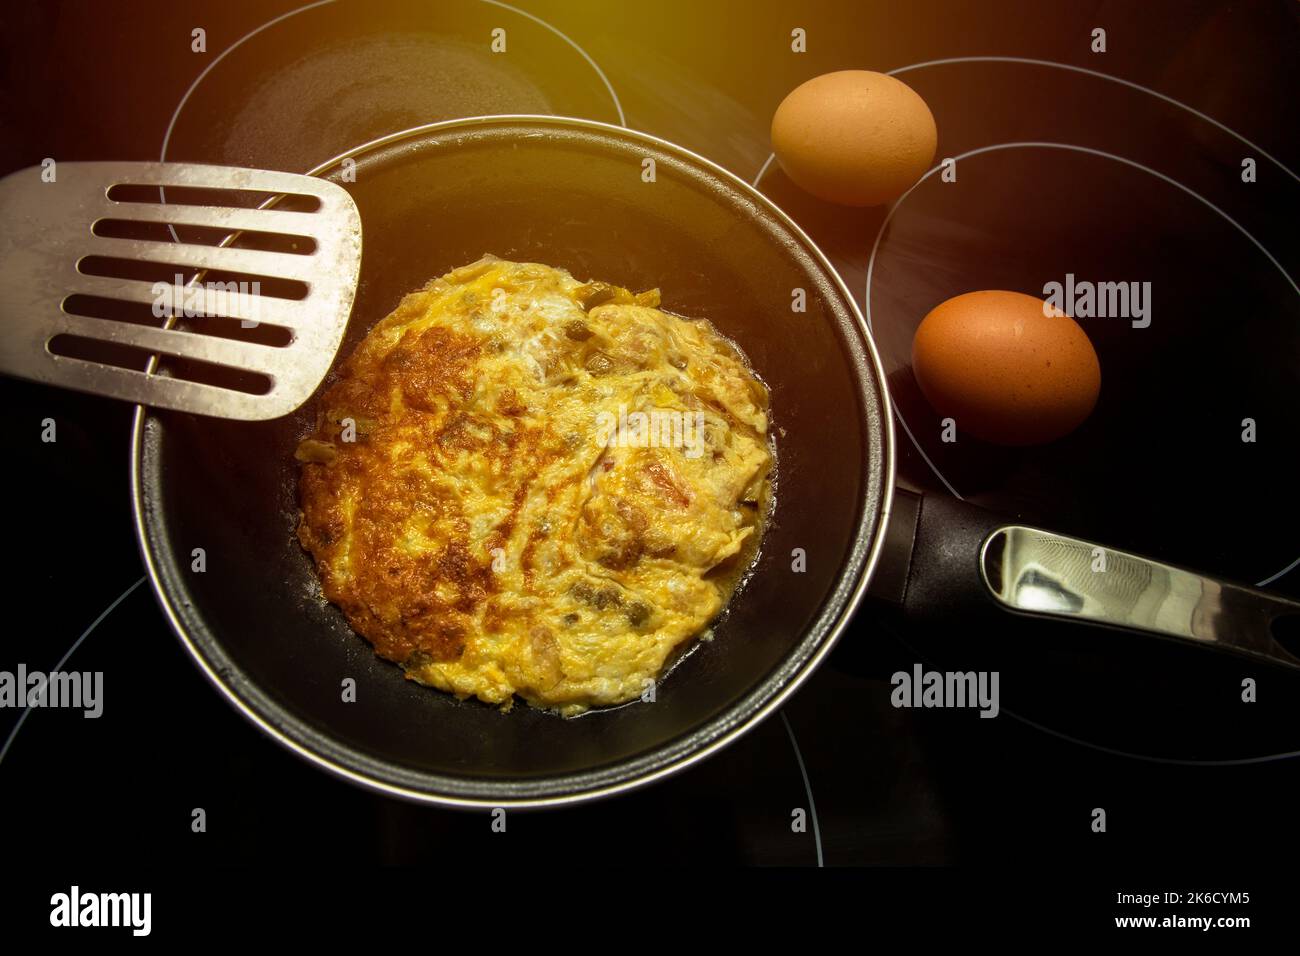 vue de dessus de l'omelette étant faite dans une poêle en métal et deux oeufs non cuits Banque D'Images